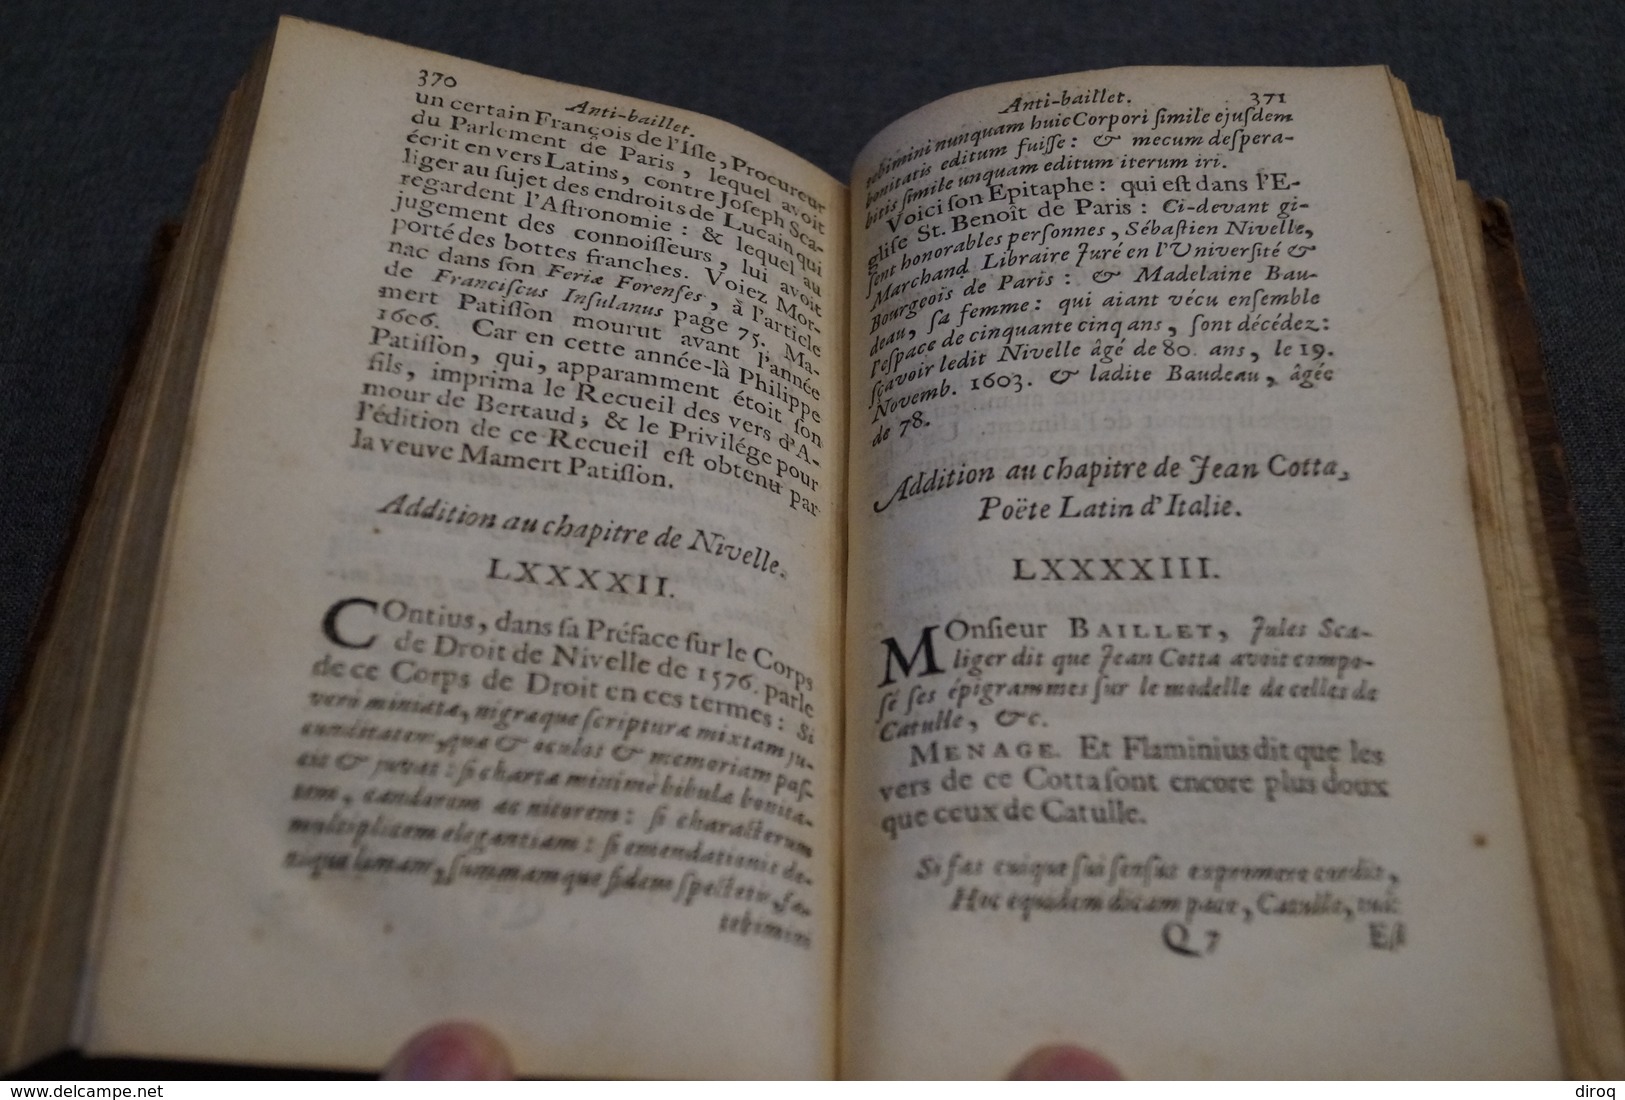 Anti-Baillet ou critique,jugement des Savants par Mr.Gilles Menage,1690,La Haye,390 pages + 16,16 Cm/10,5 Cm.